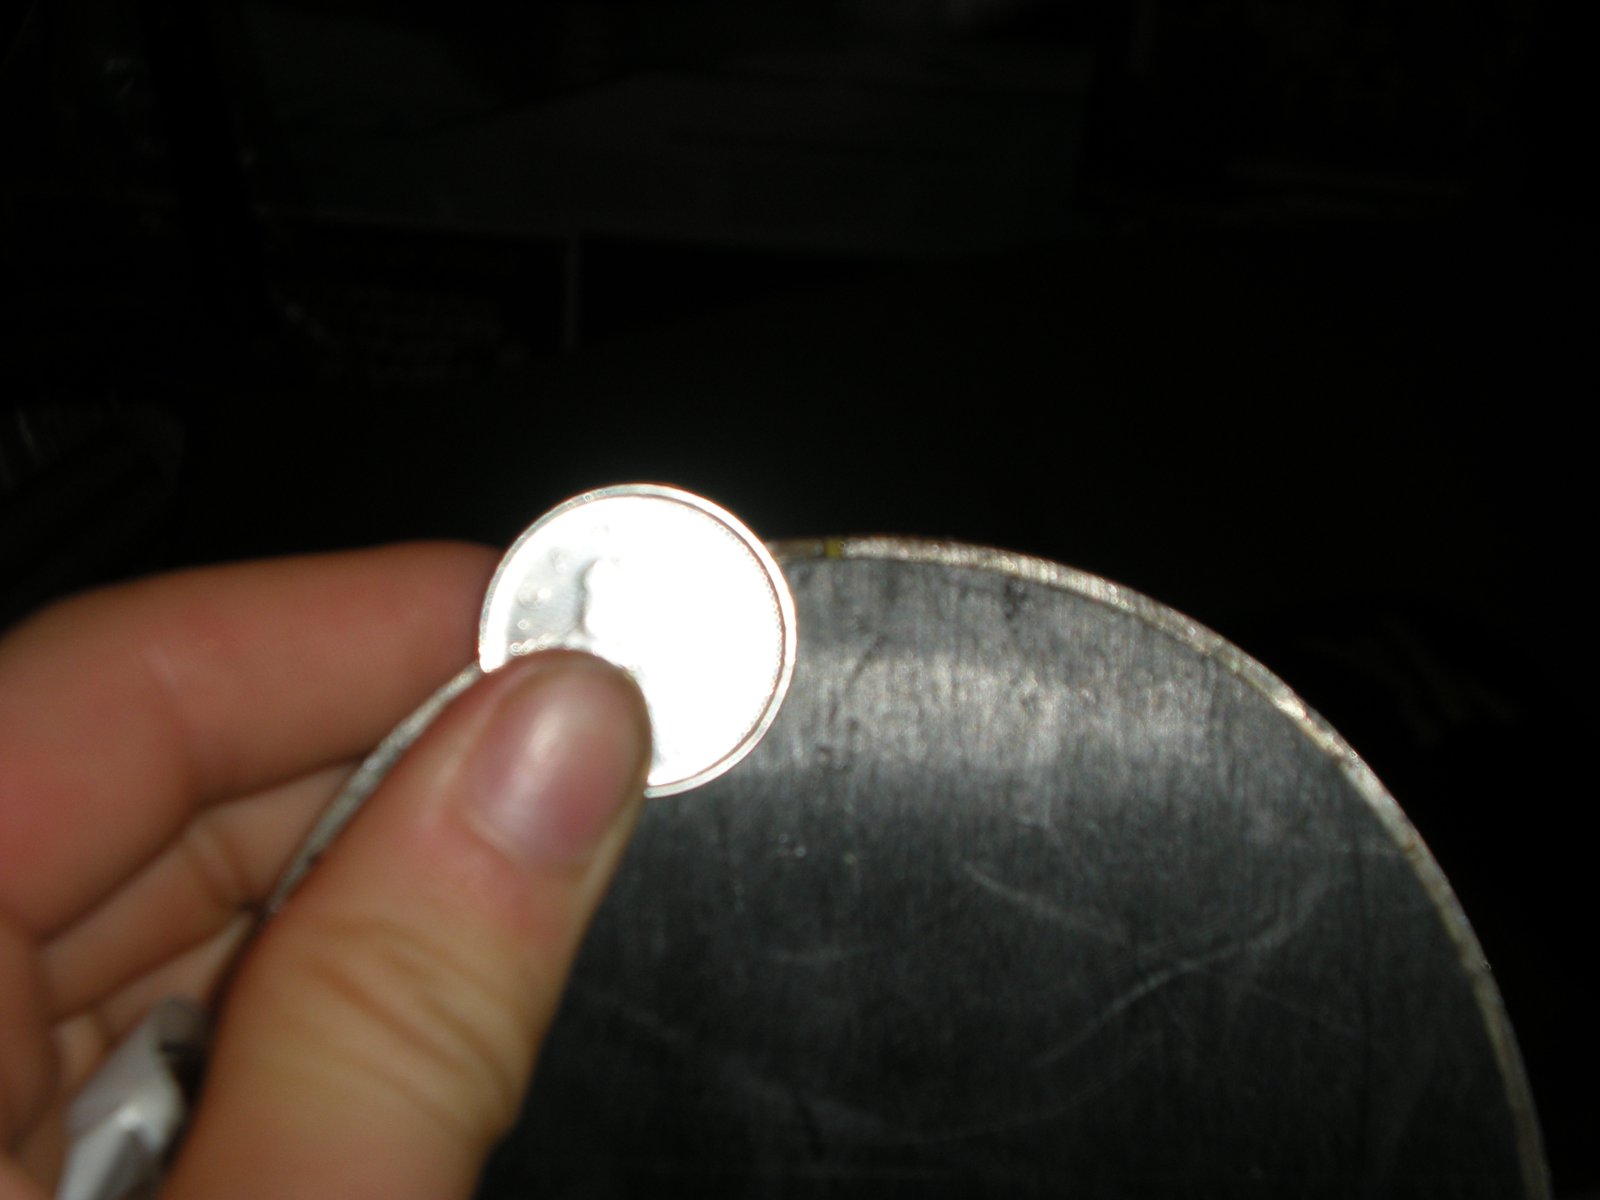 Little piece of edge broken off of tip